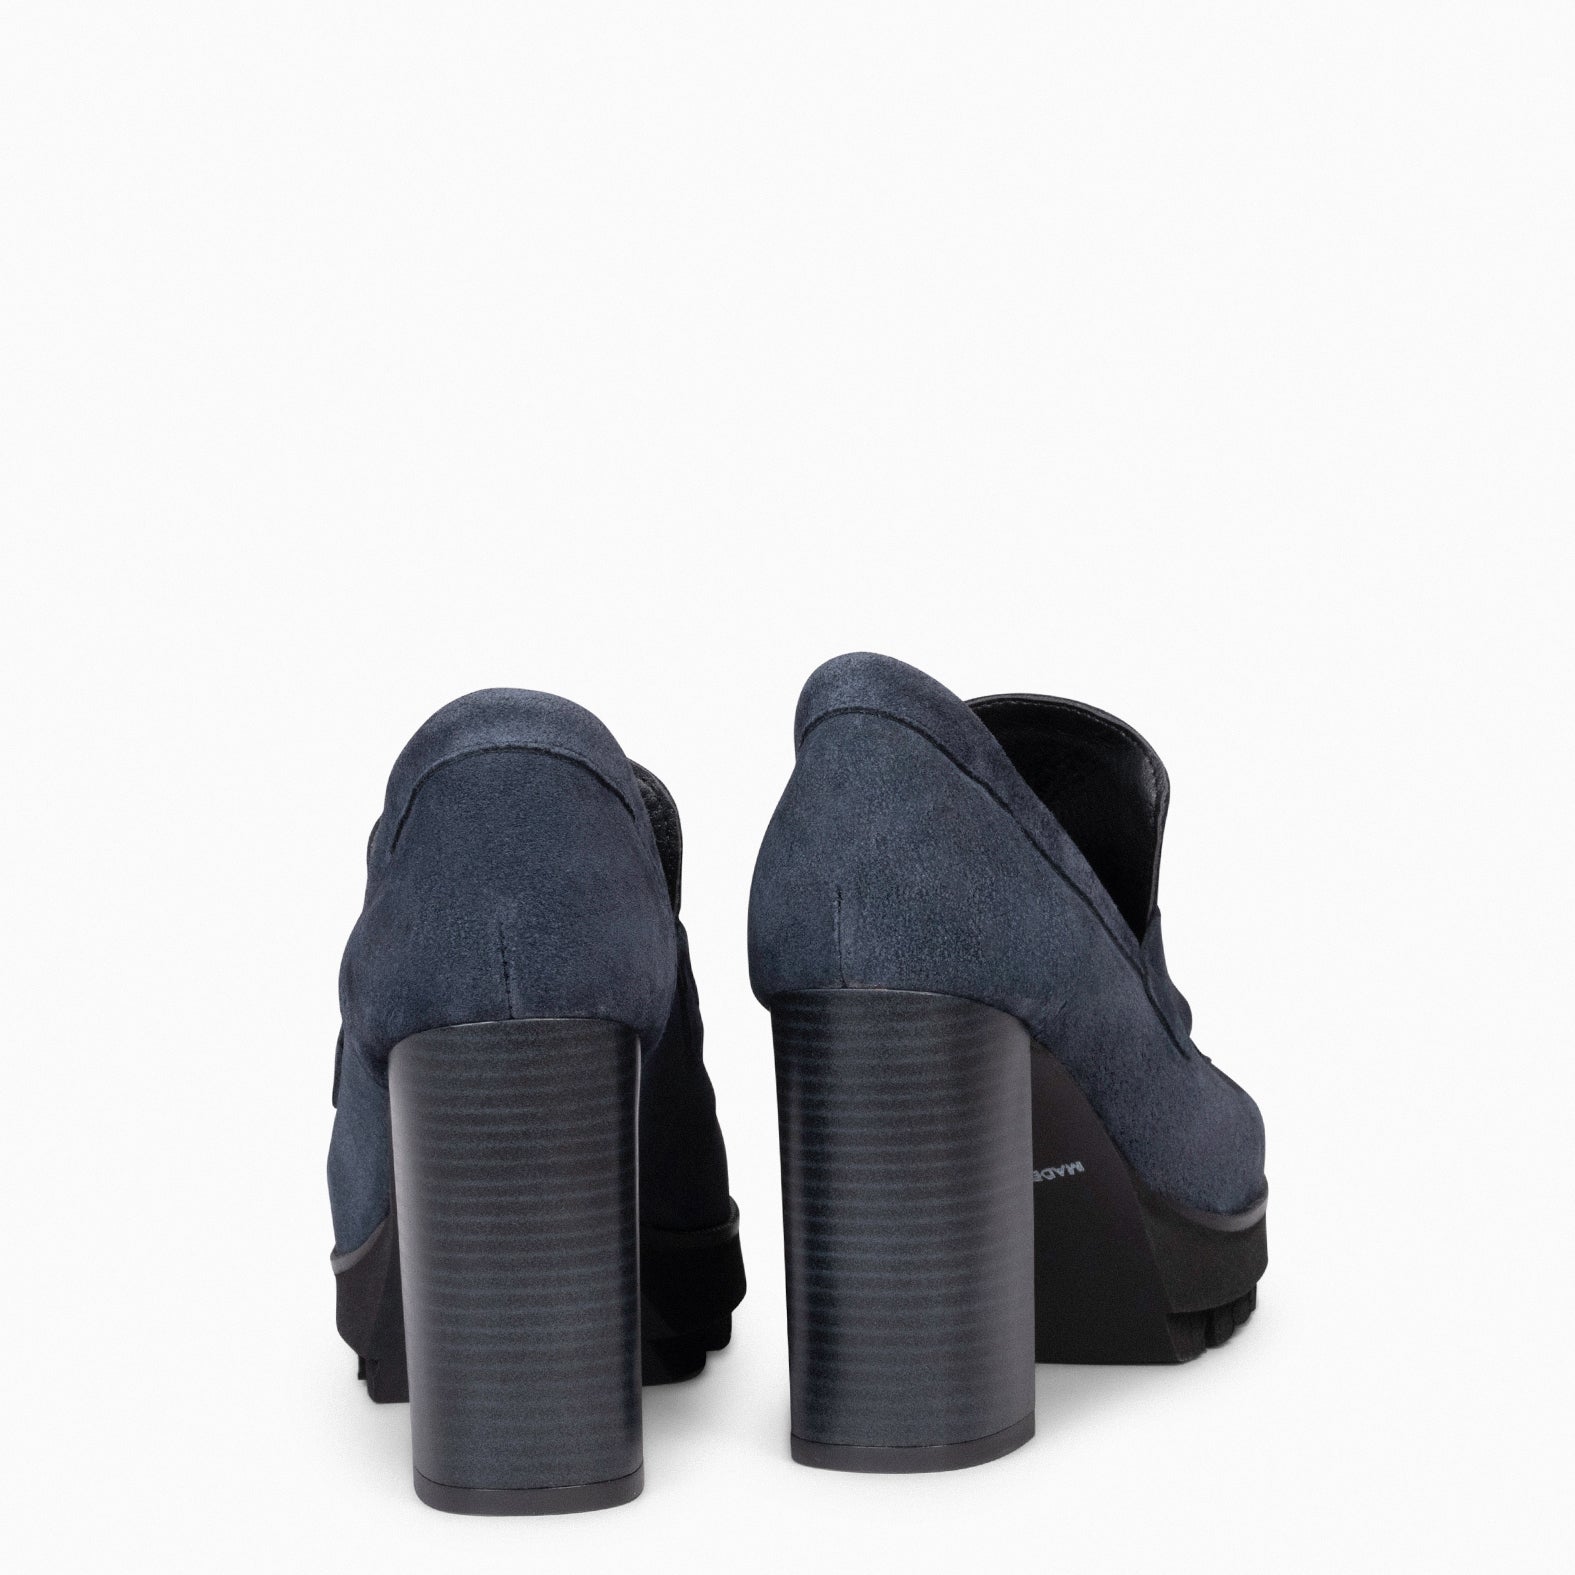 TREND – BLUE high heel moccasins with platform 